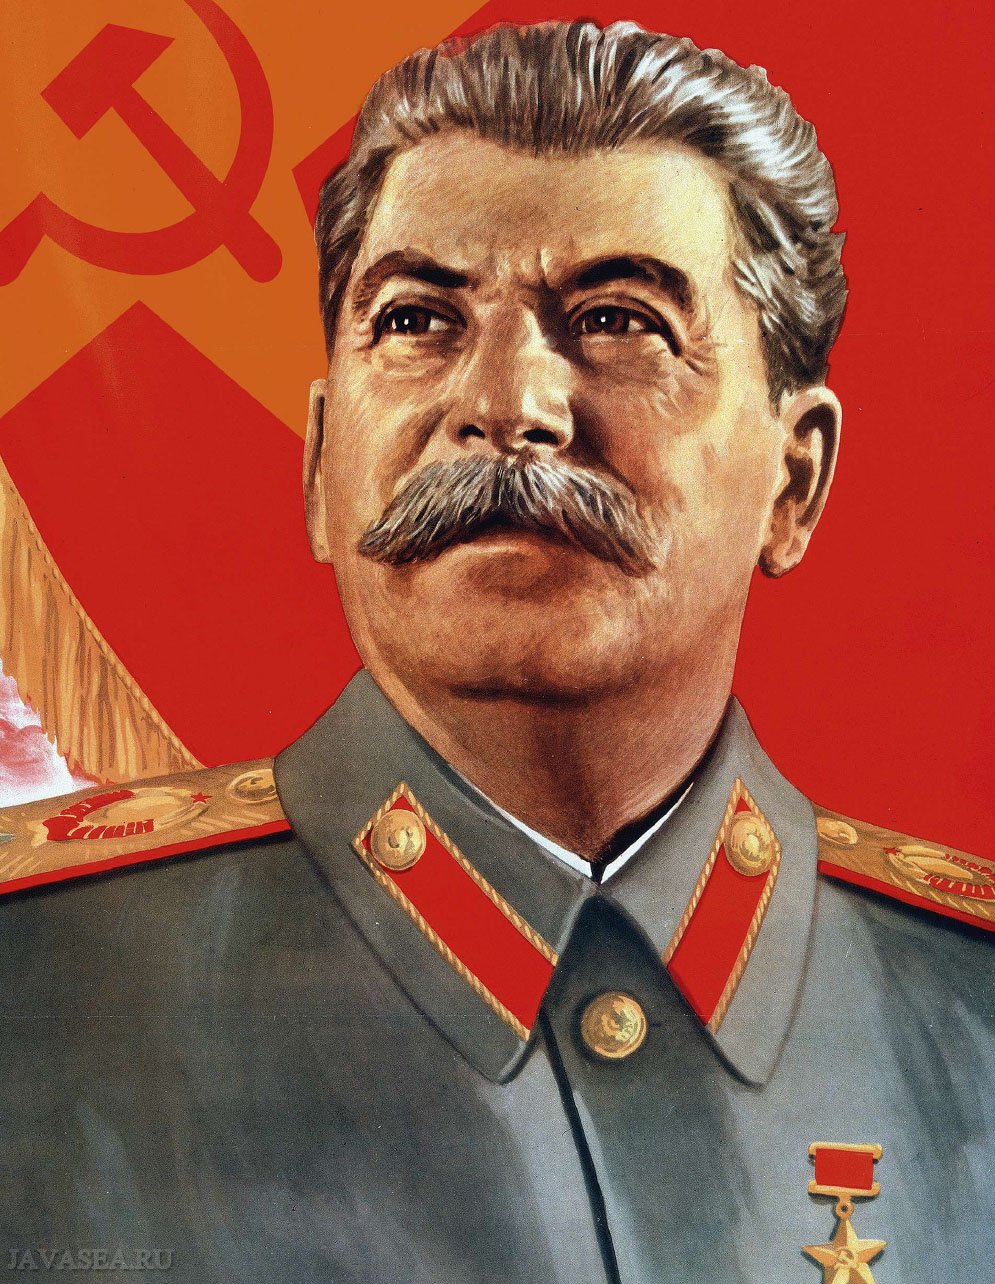 Картинки Сталин (45 фото) » Юмор, позитив и много смешных картинок